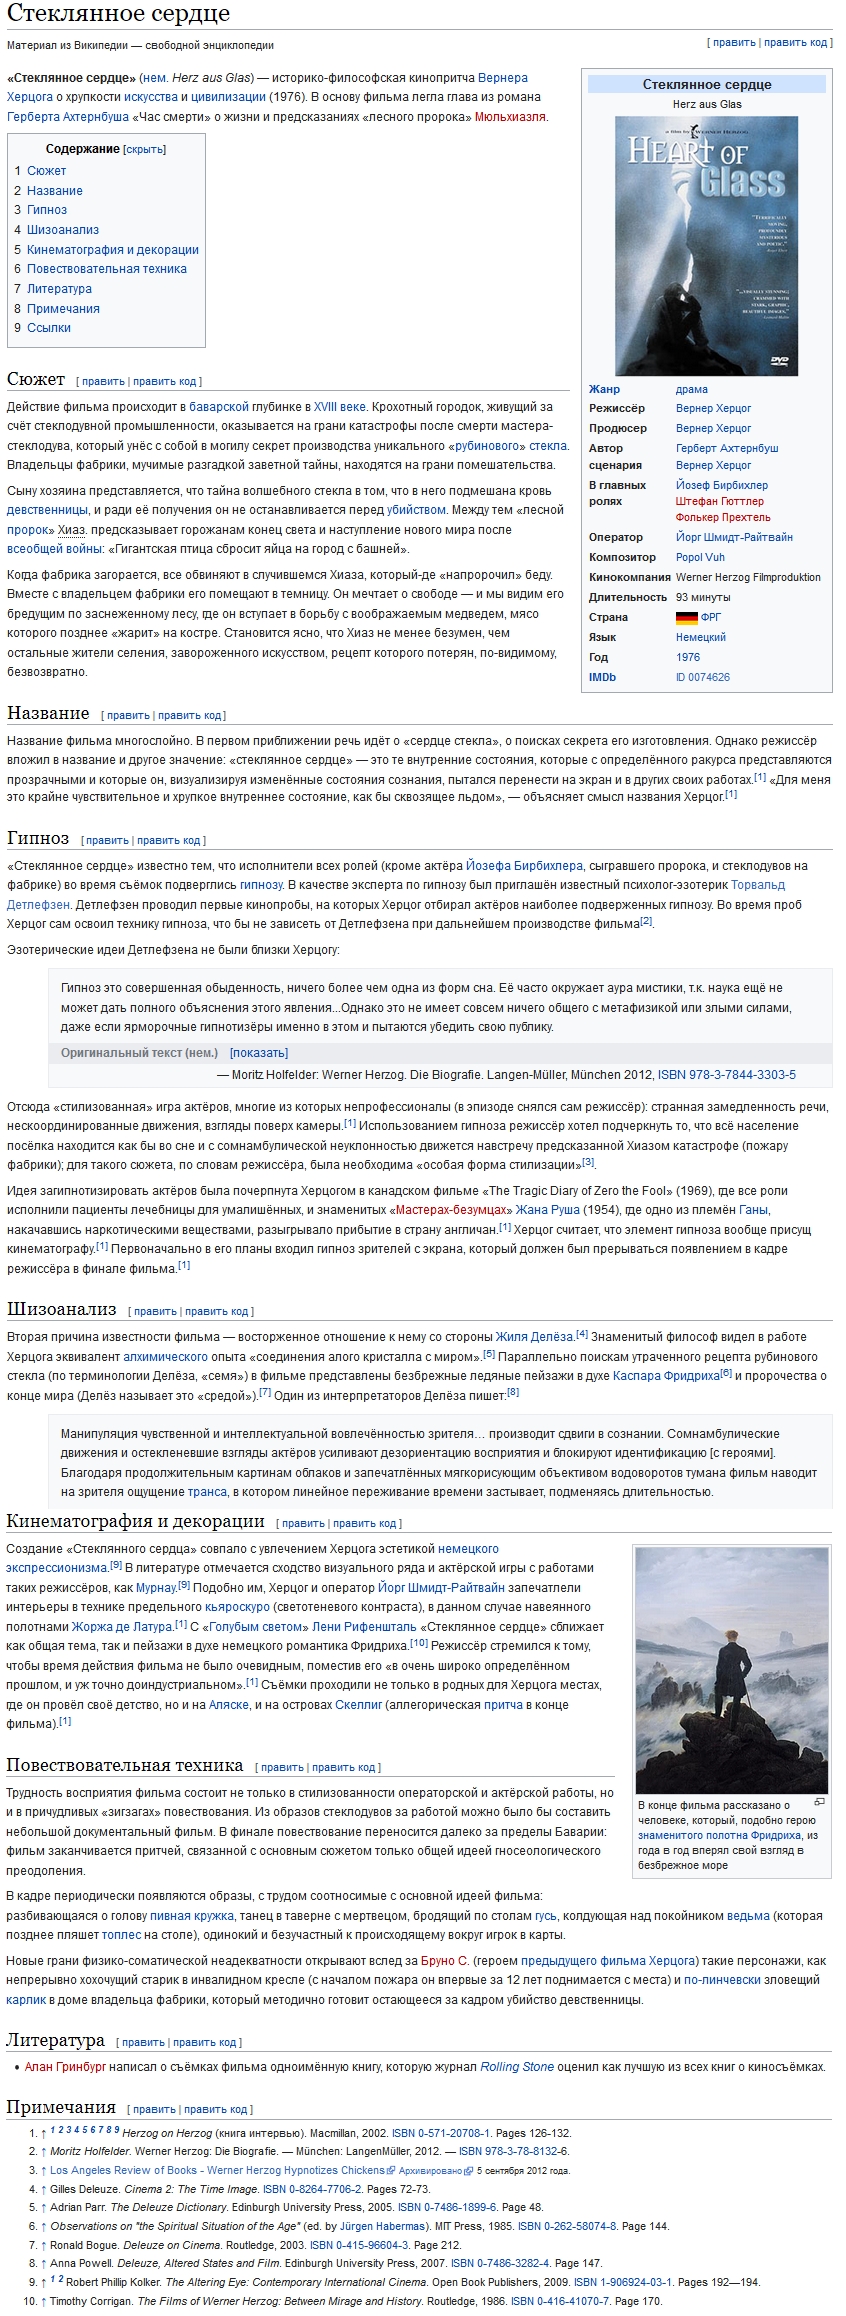 Pozoruhodně zasvěcený rozbor filmu Skleněné srdce podle Achternbuschova scénáře na webových stránkách ruské Wikipedie